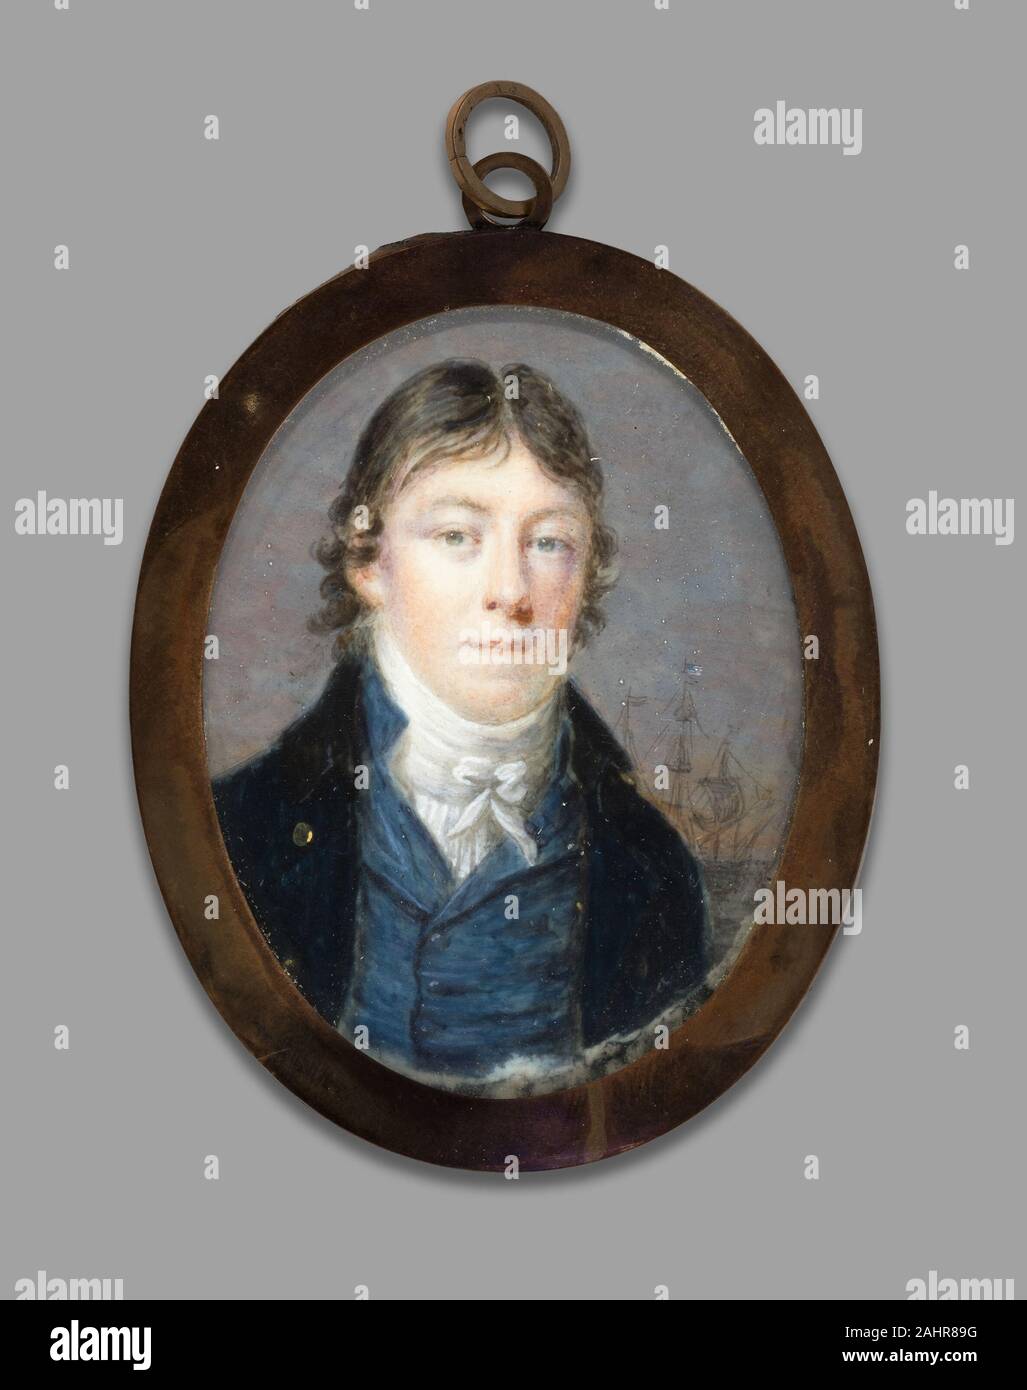 Thomas Birch. Portrait de Samuel Armitage. 1840. United States. Huile sur l'ivoire Banque D'Images